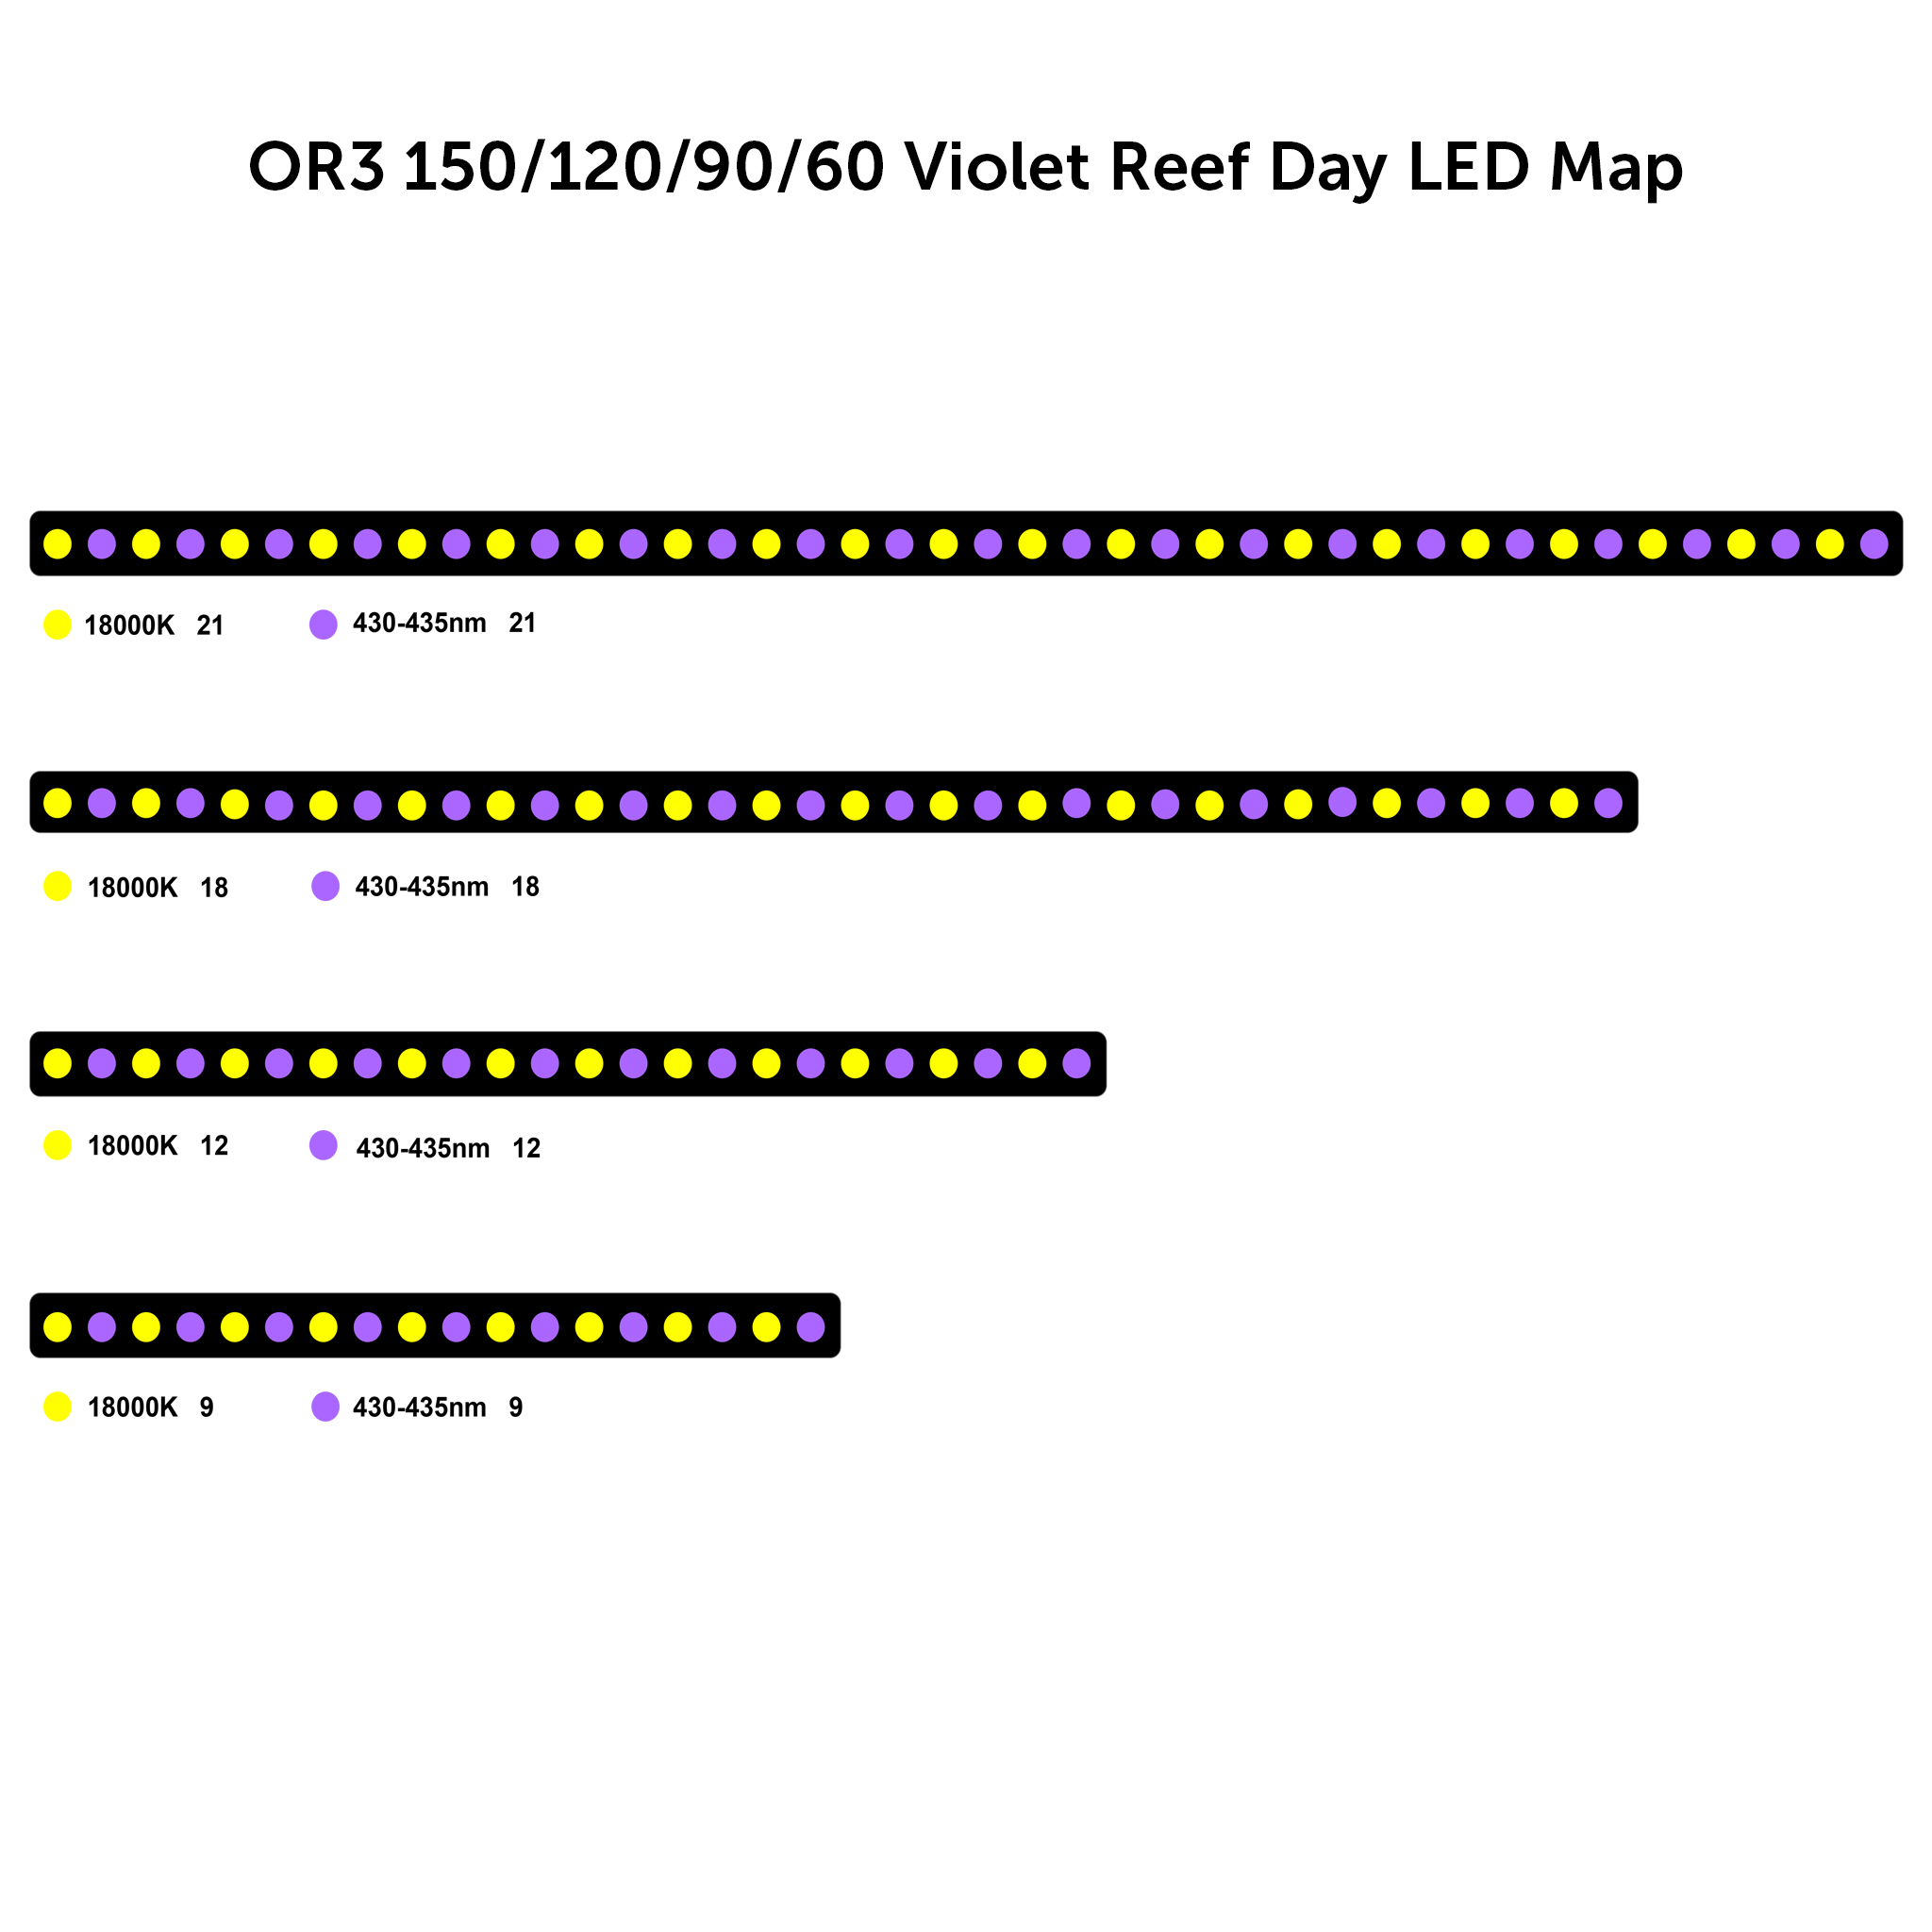 OR3 violet reef day led kart